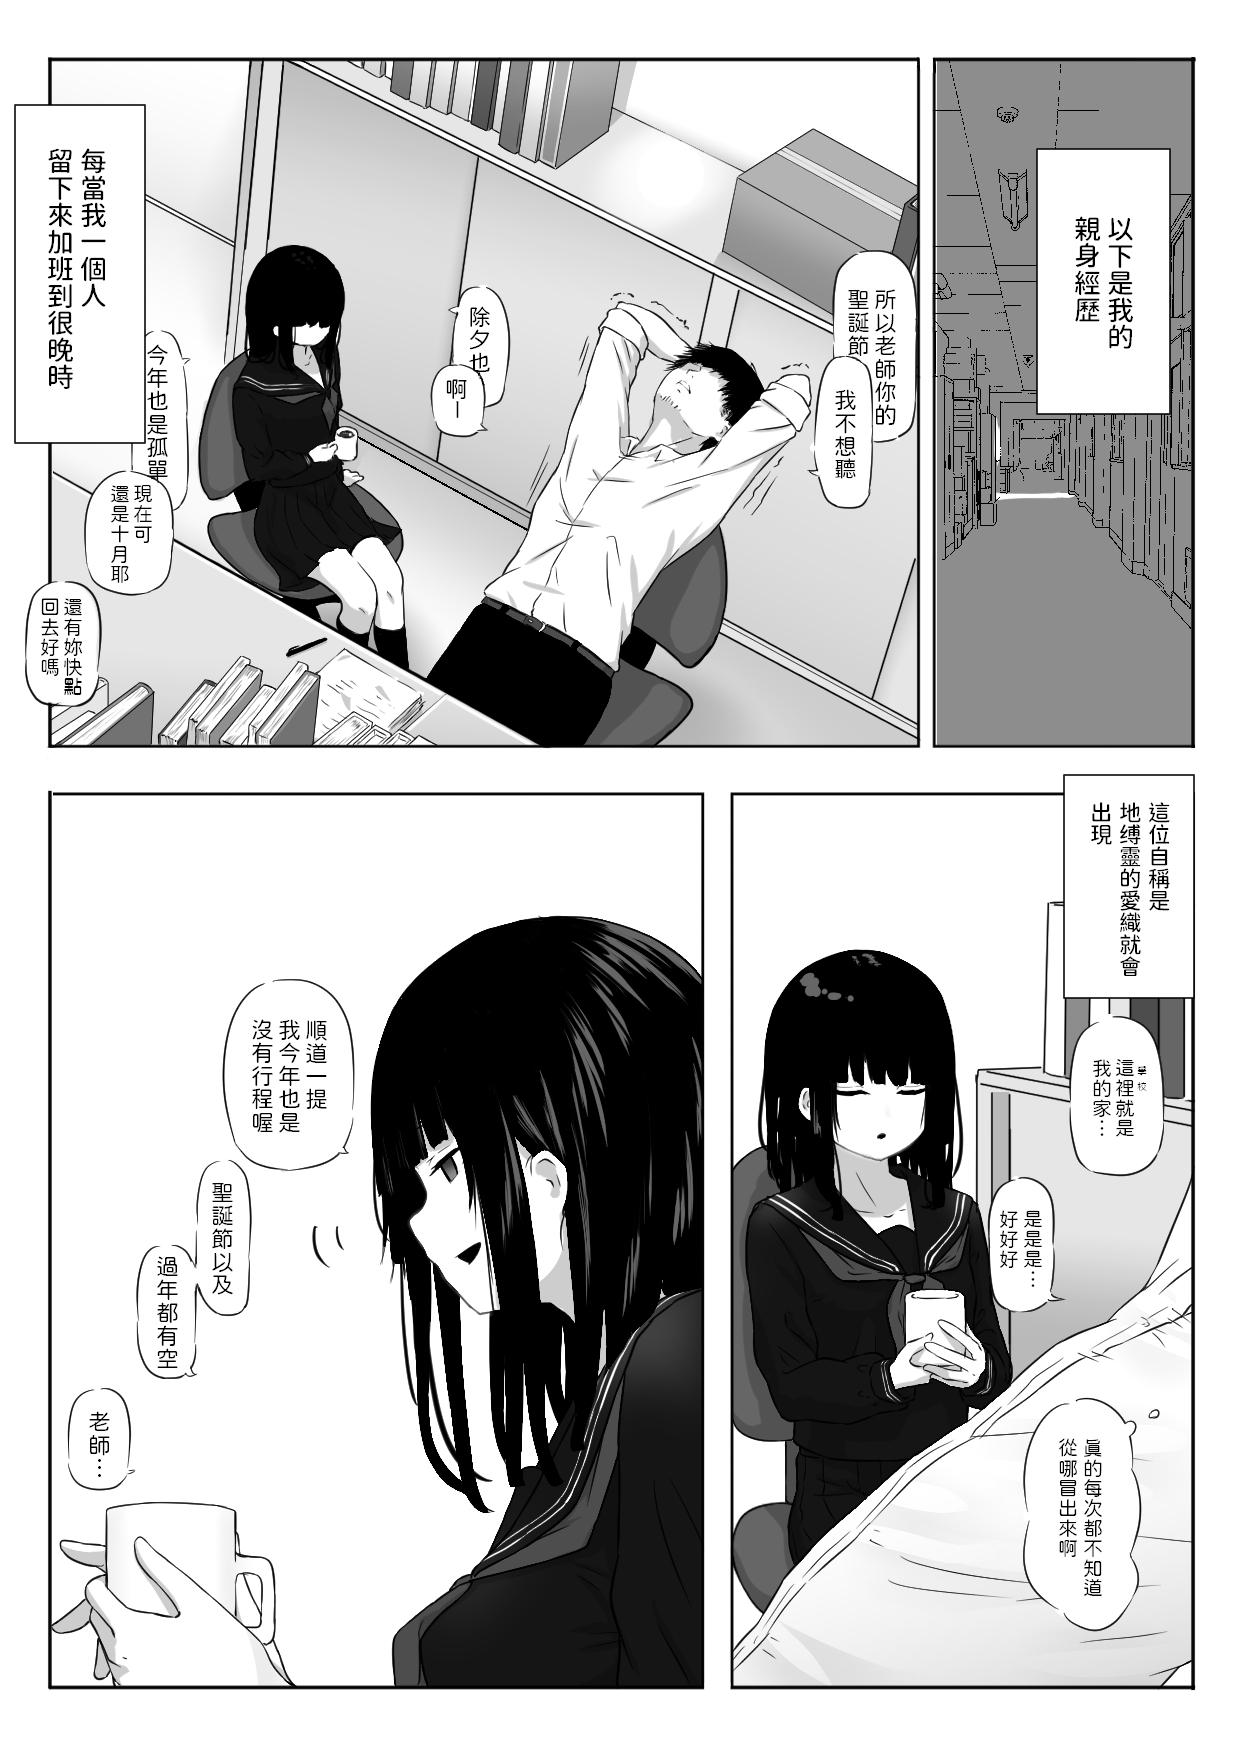 Interacial Watashi wa Yuurei desu. - Original Femboy - Page 2